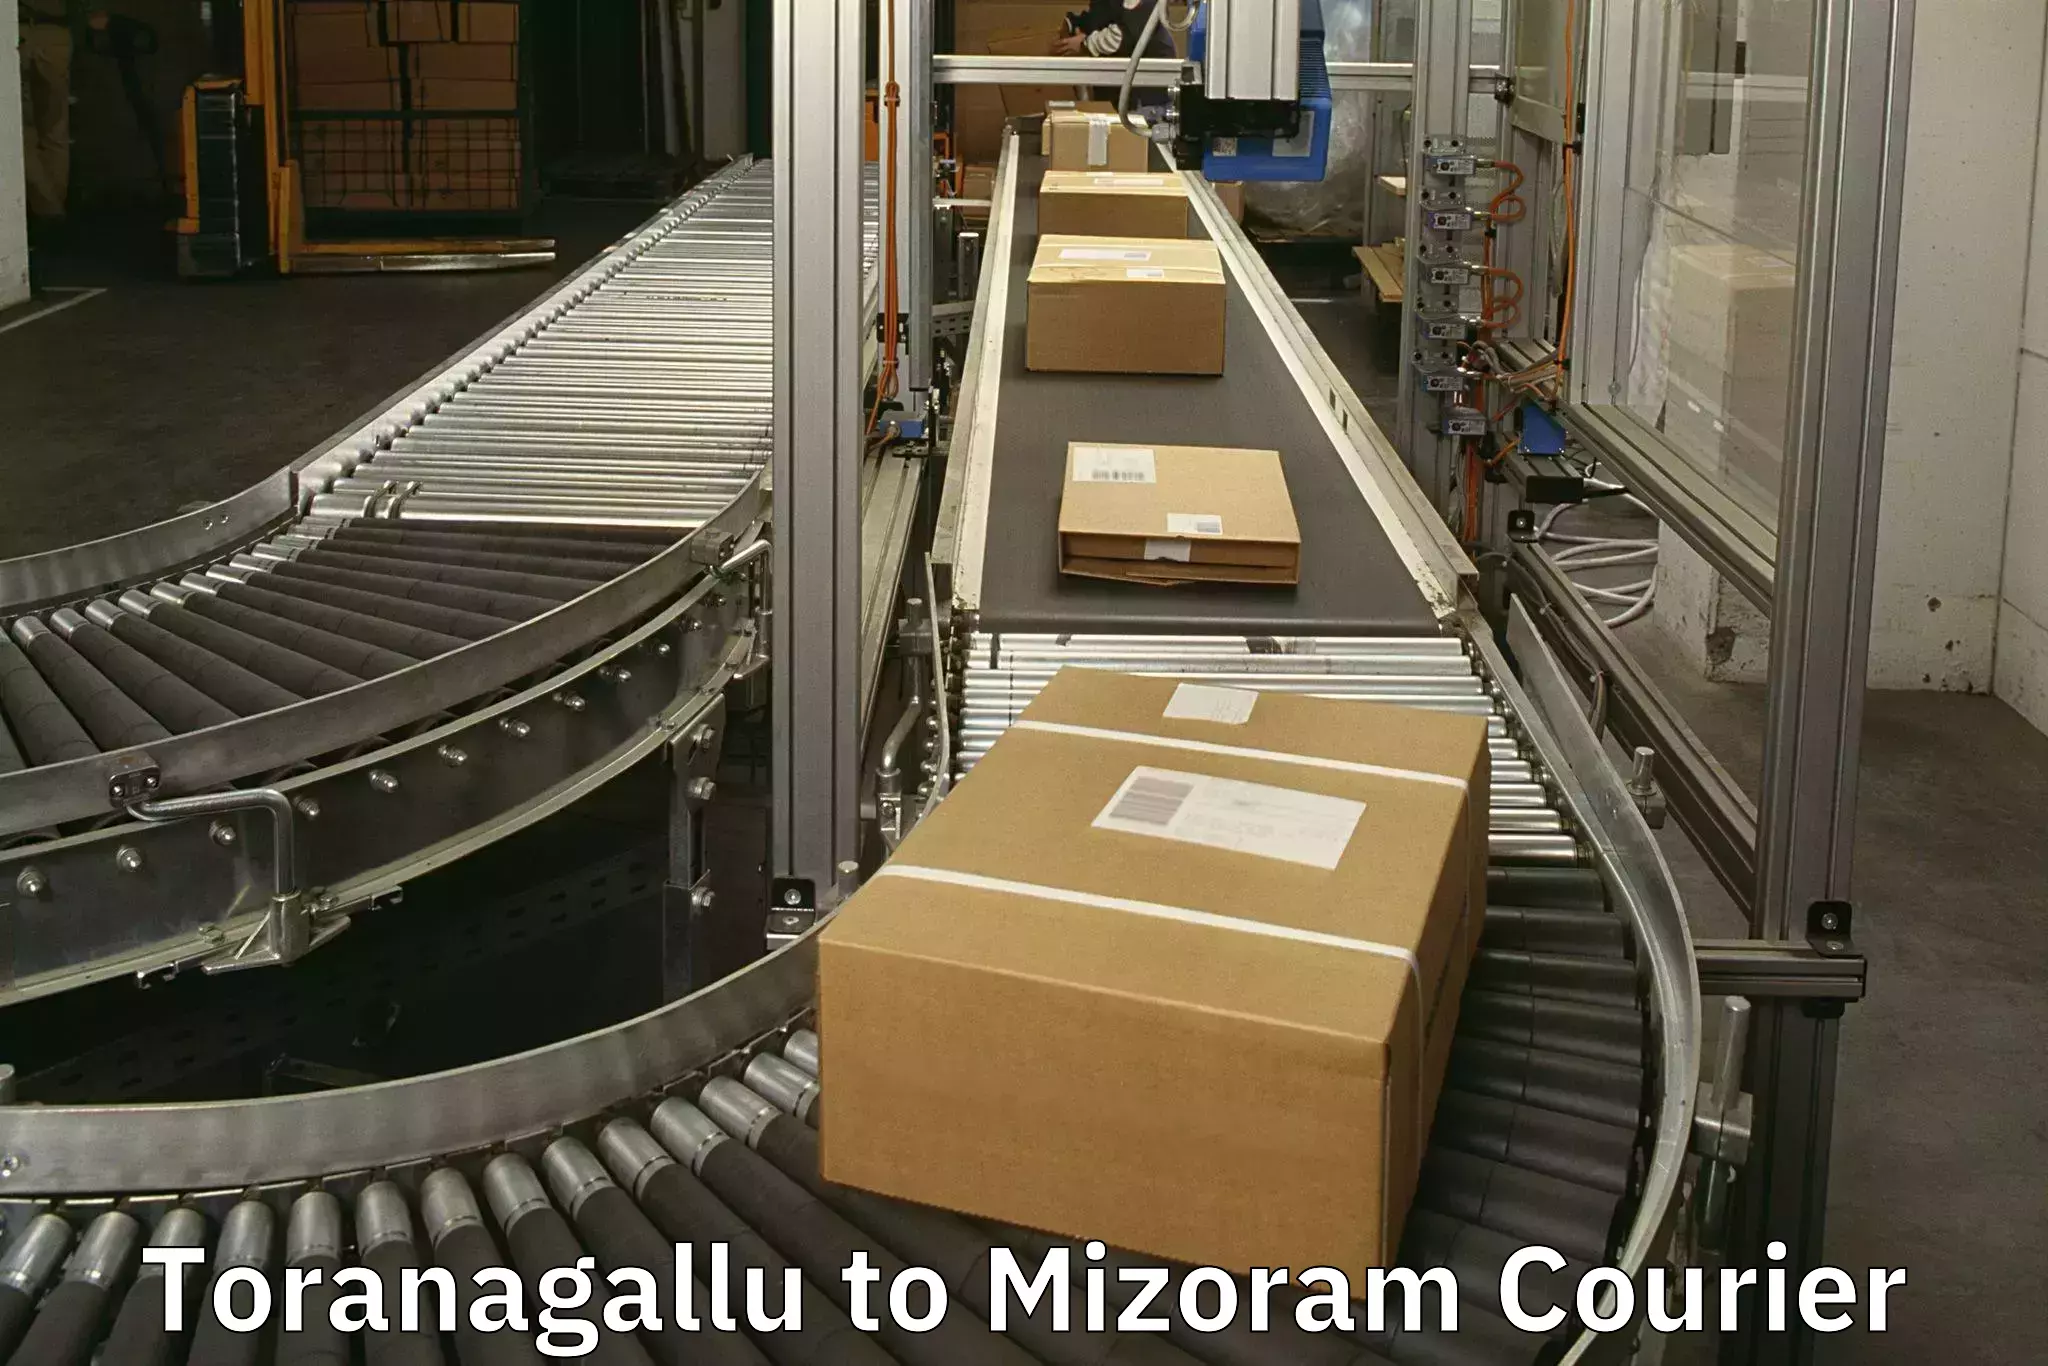 Baggage transport management Toranagallu to Mizoram